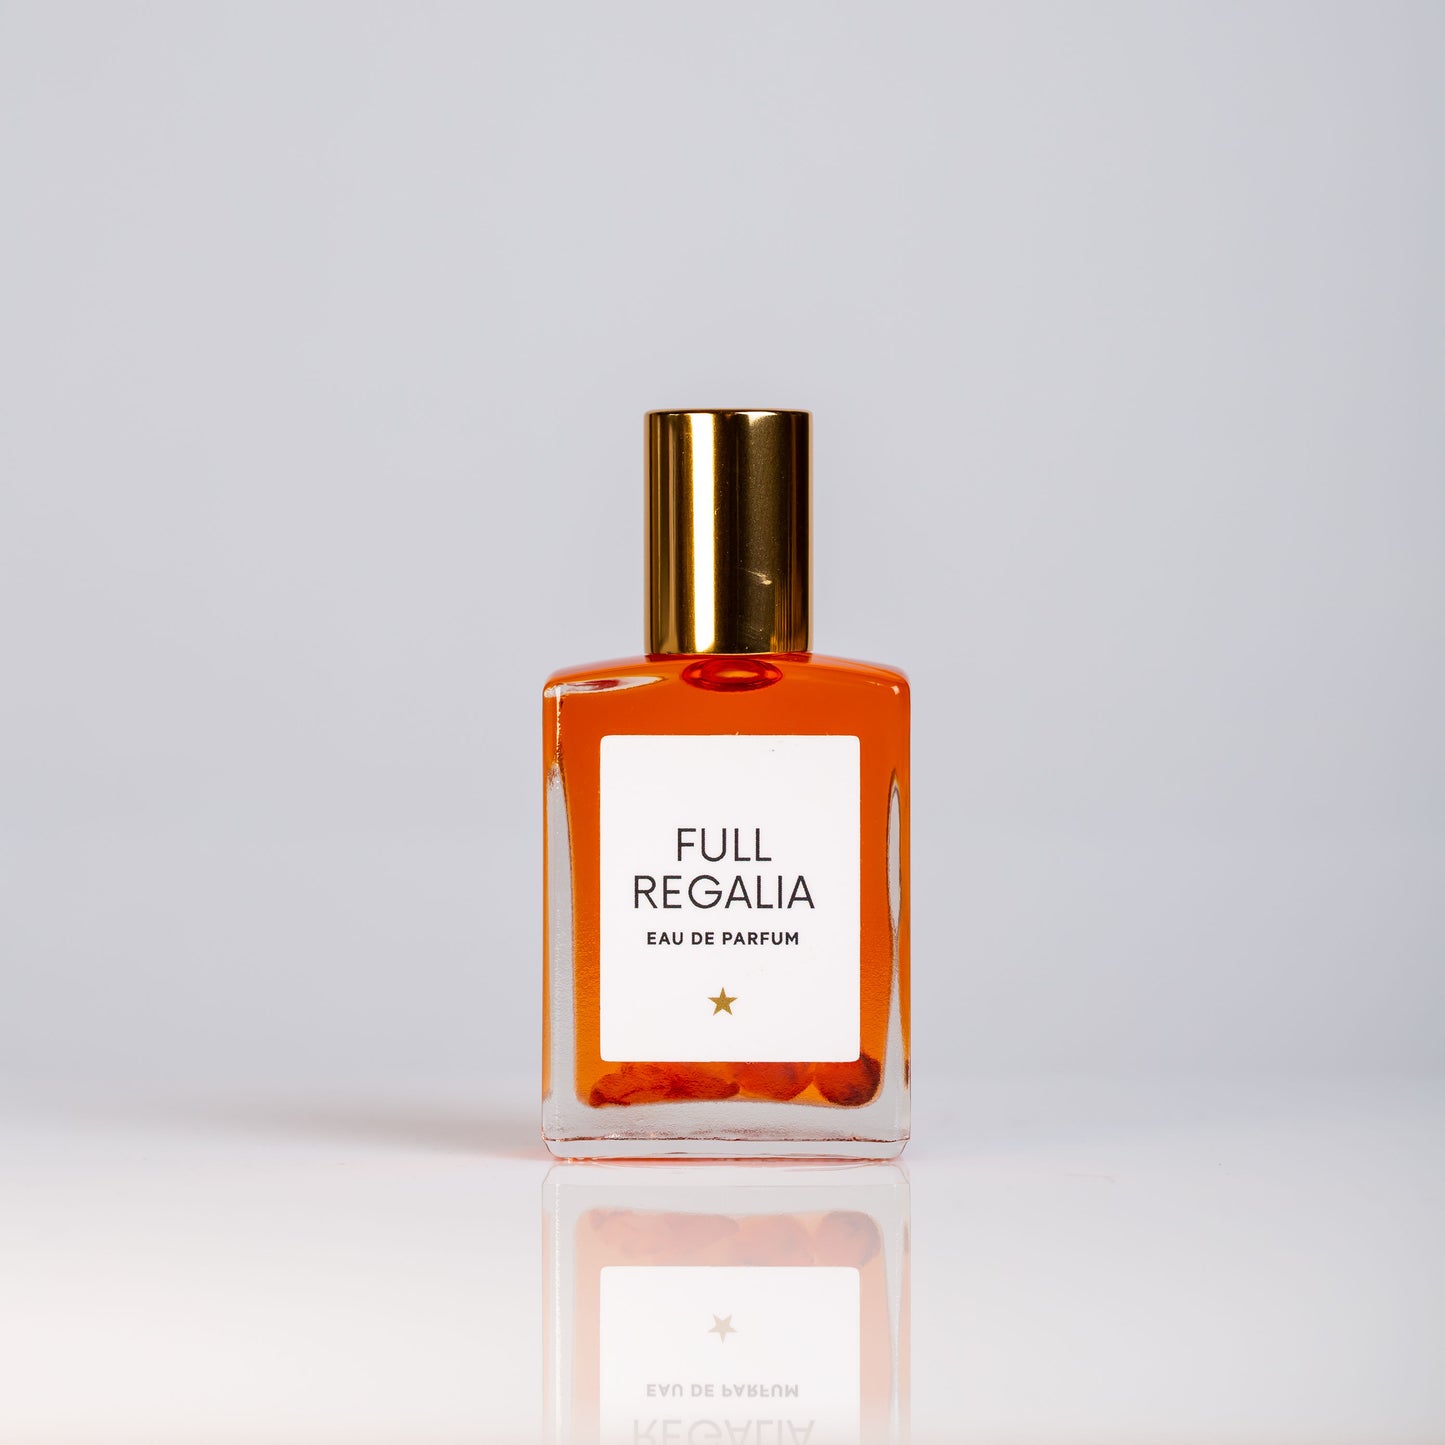 Sexy Perfume Oil 